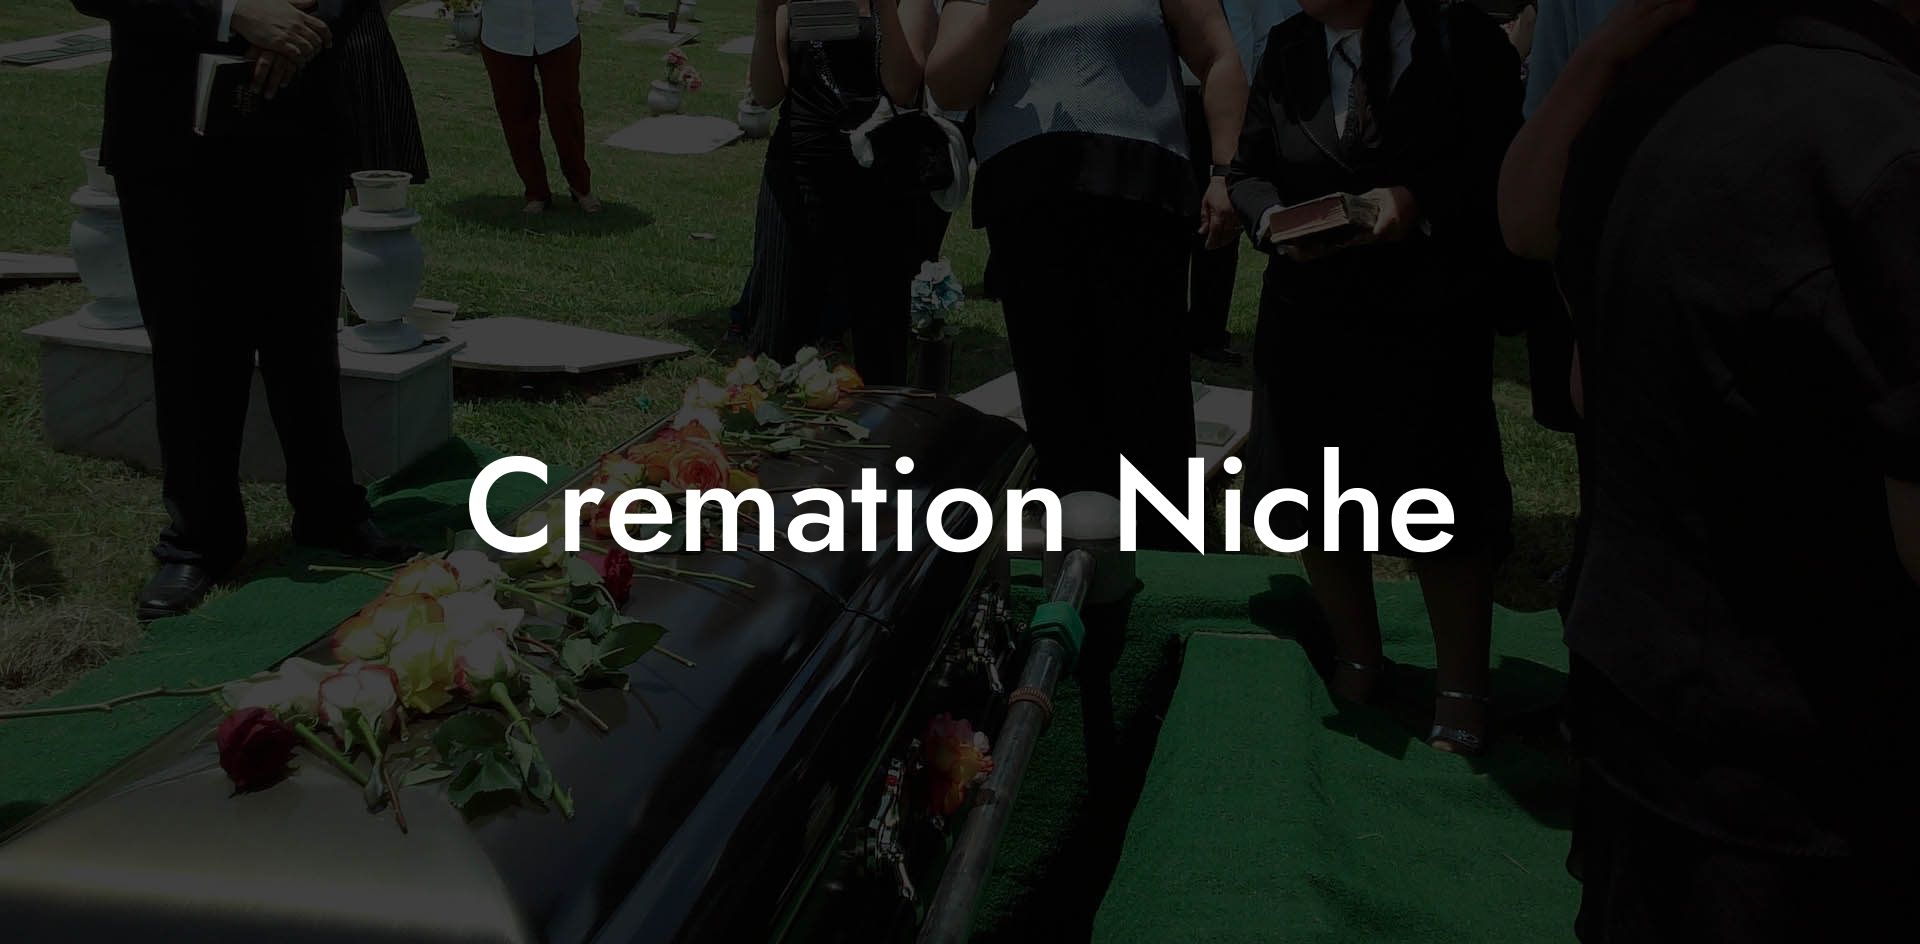 Cremation Niche